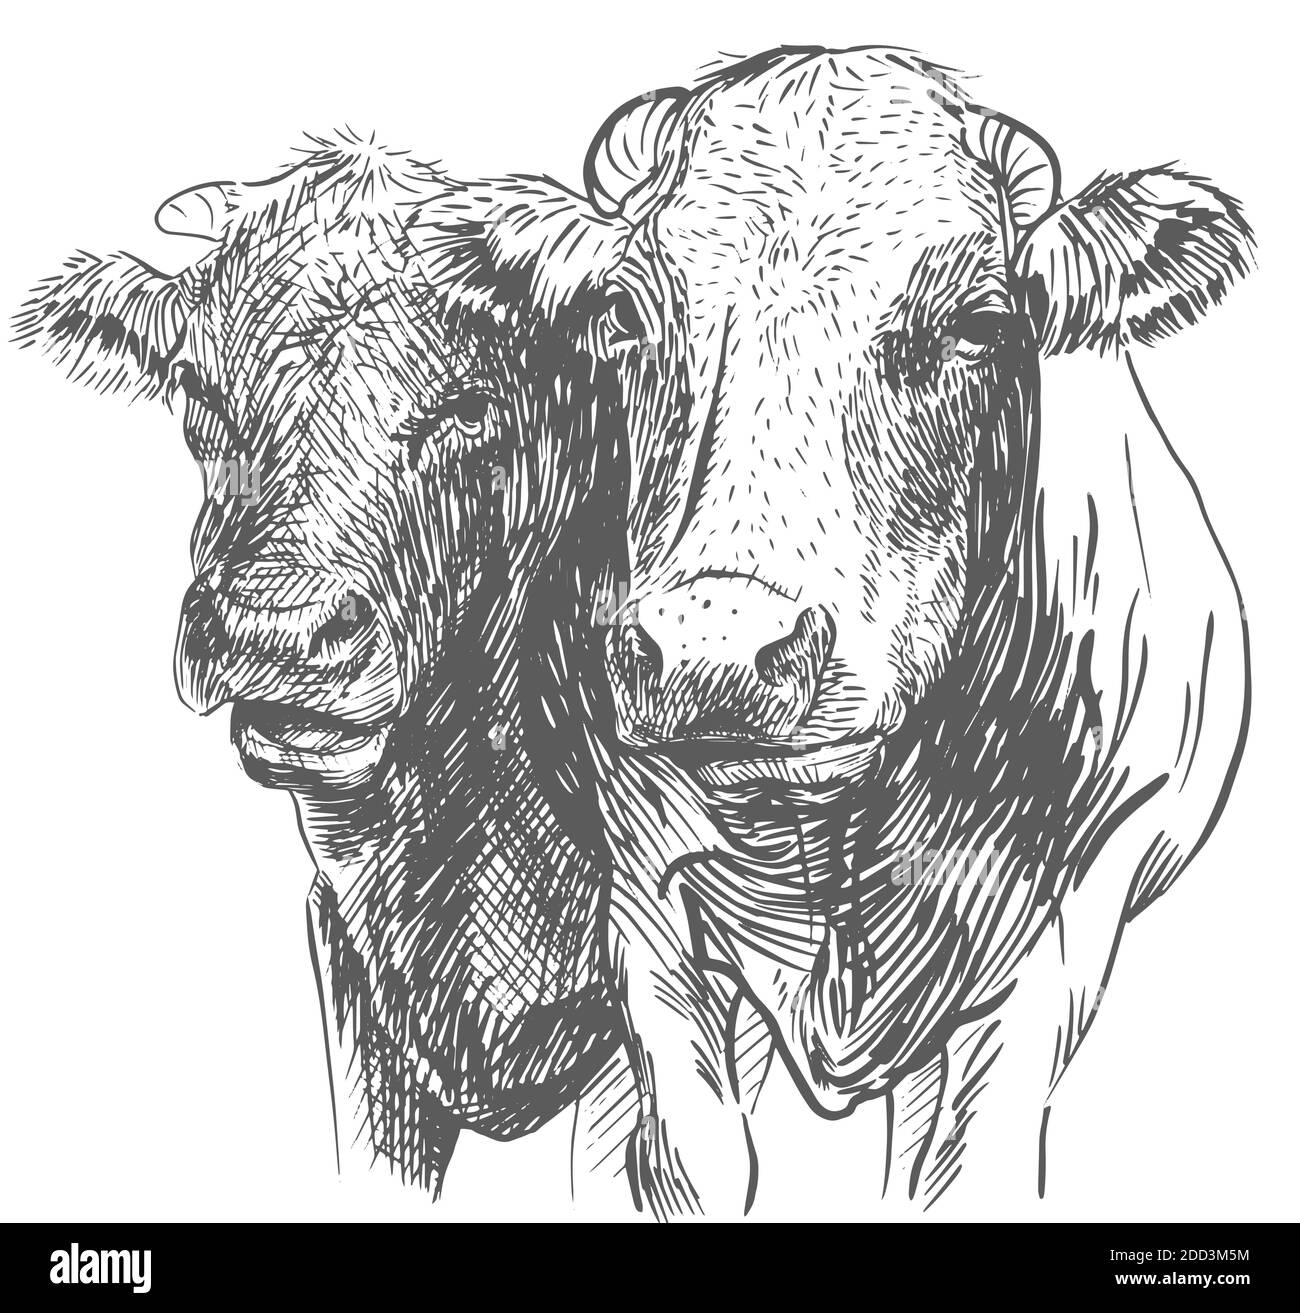 Deux têtes de vaches. Dessiné à la main dans une illustration vectorielle noire et blanche de style esquisse Illustration de Vecteur